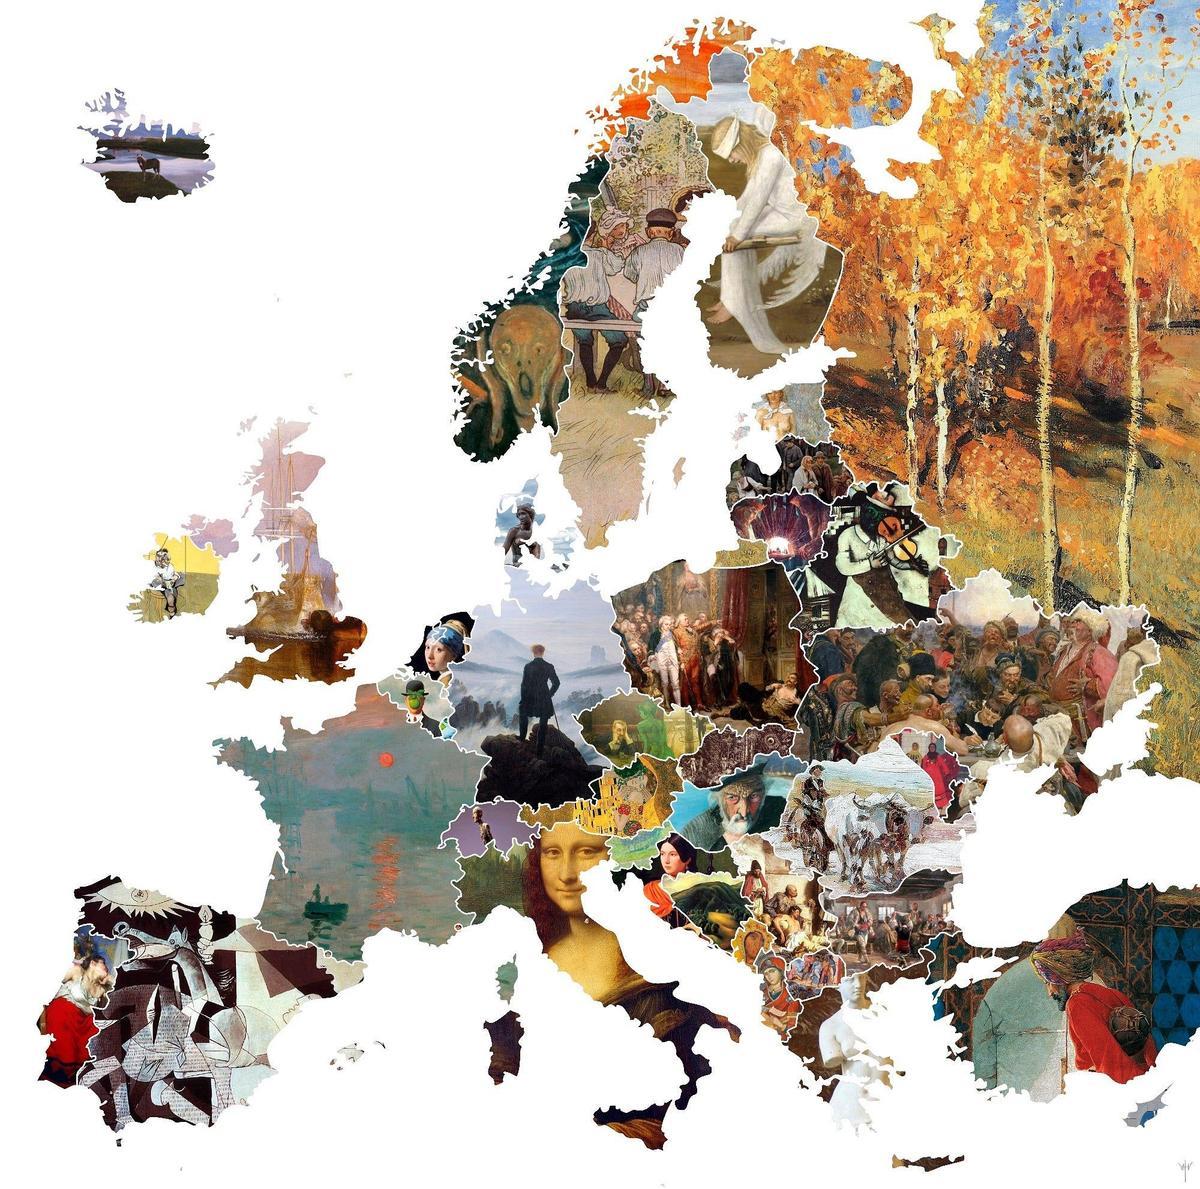 Mapa Europa